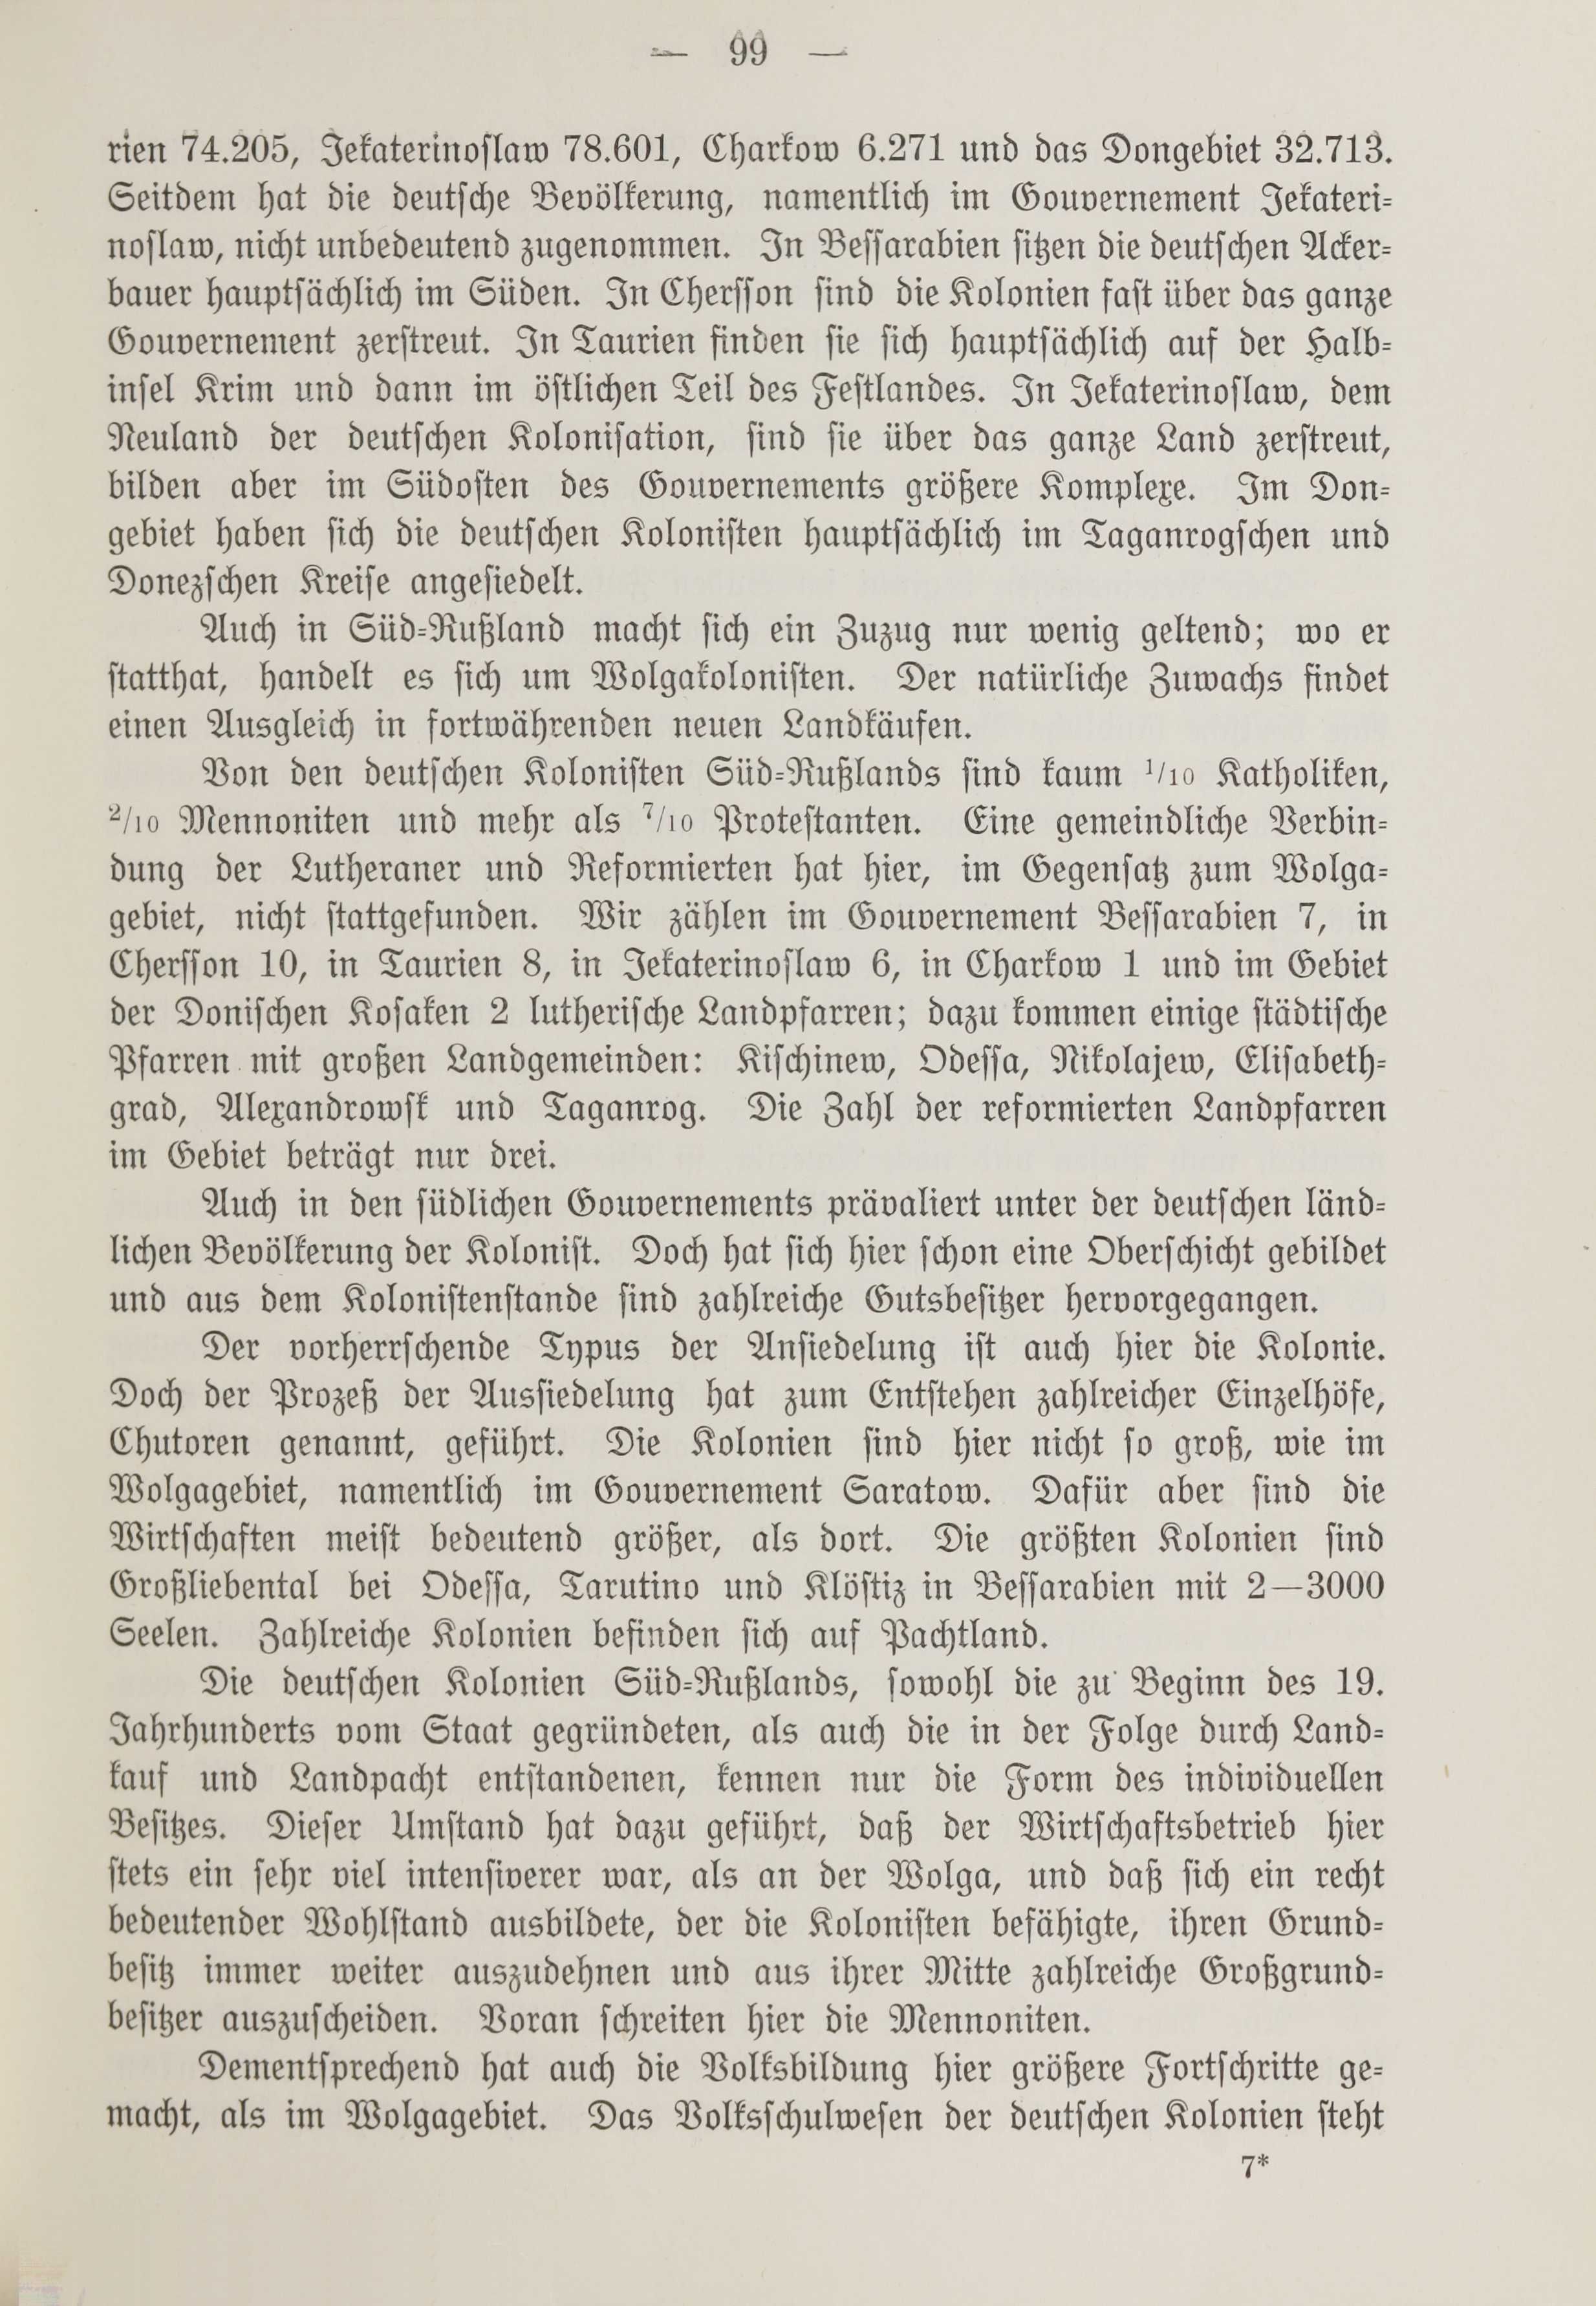 Deutsche Monatsschrift für Russland [1] (1912) | 107. (99) Main body of text